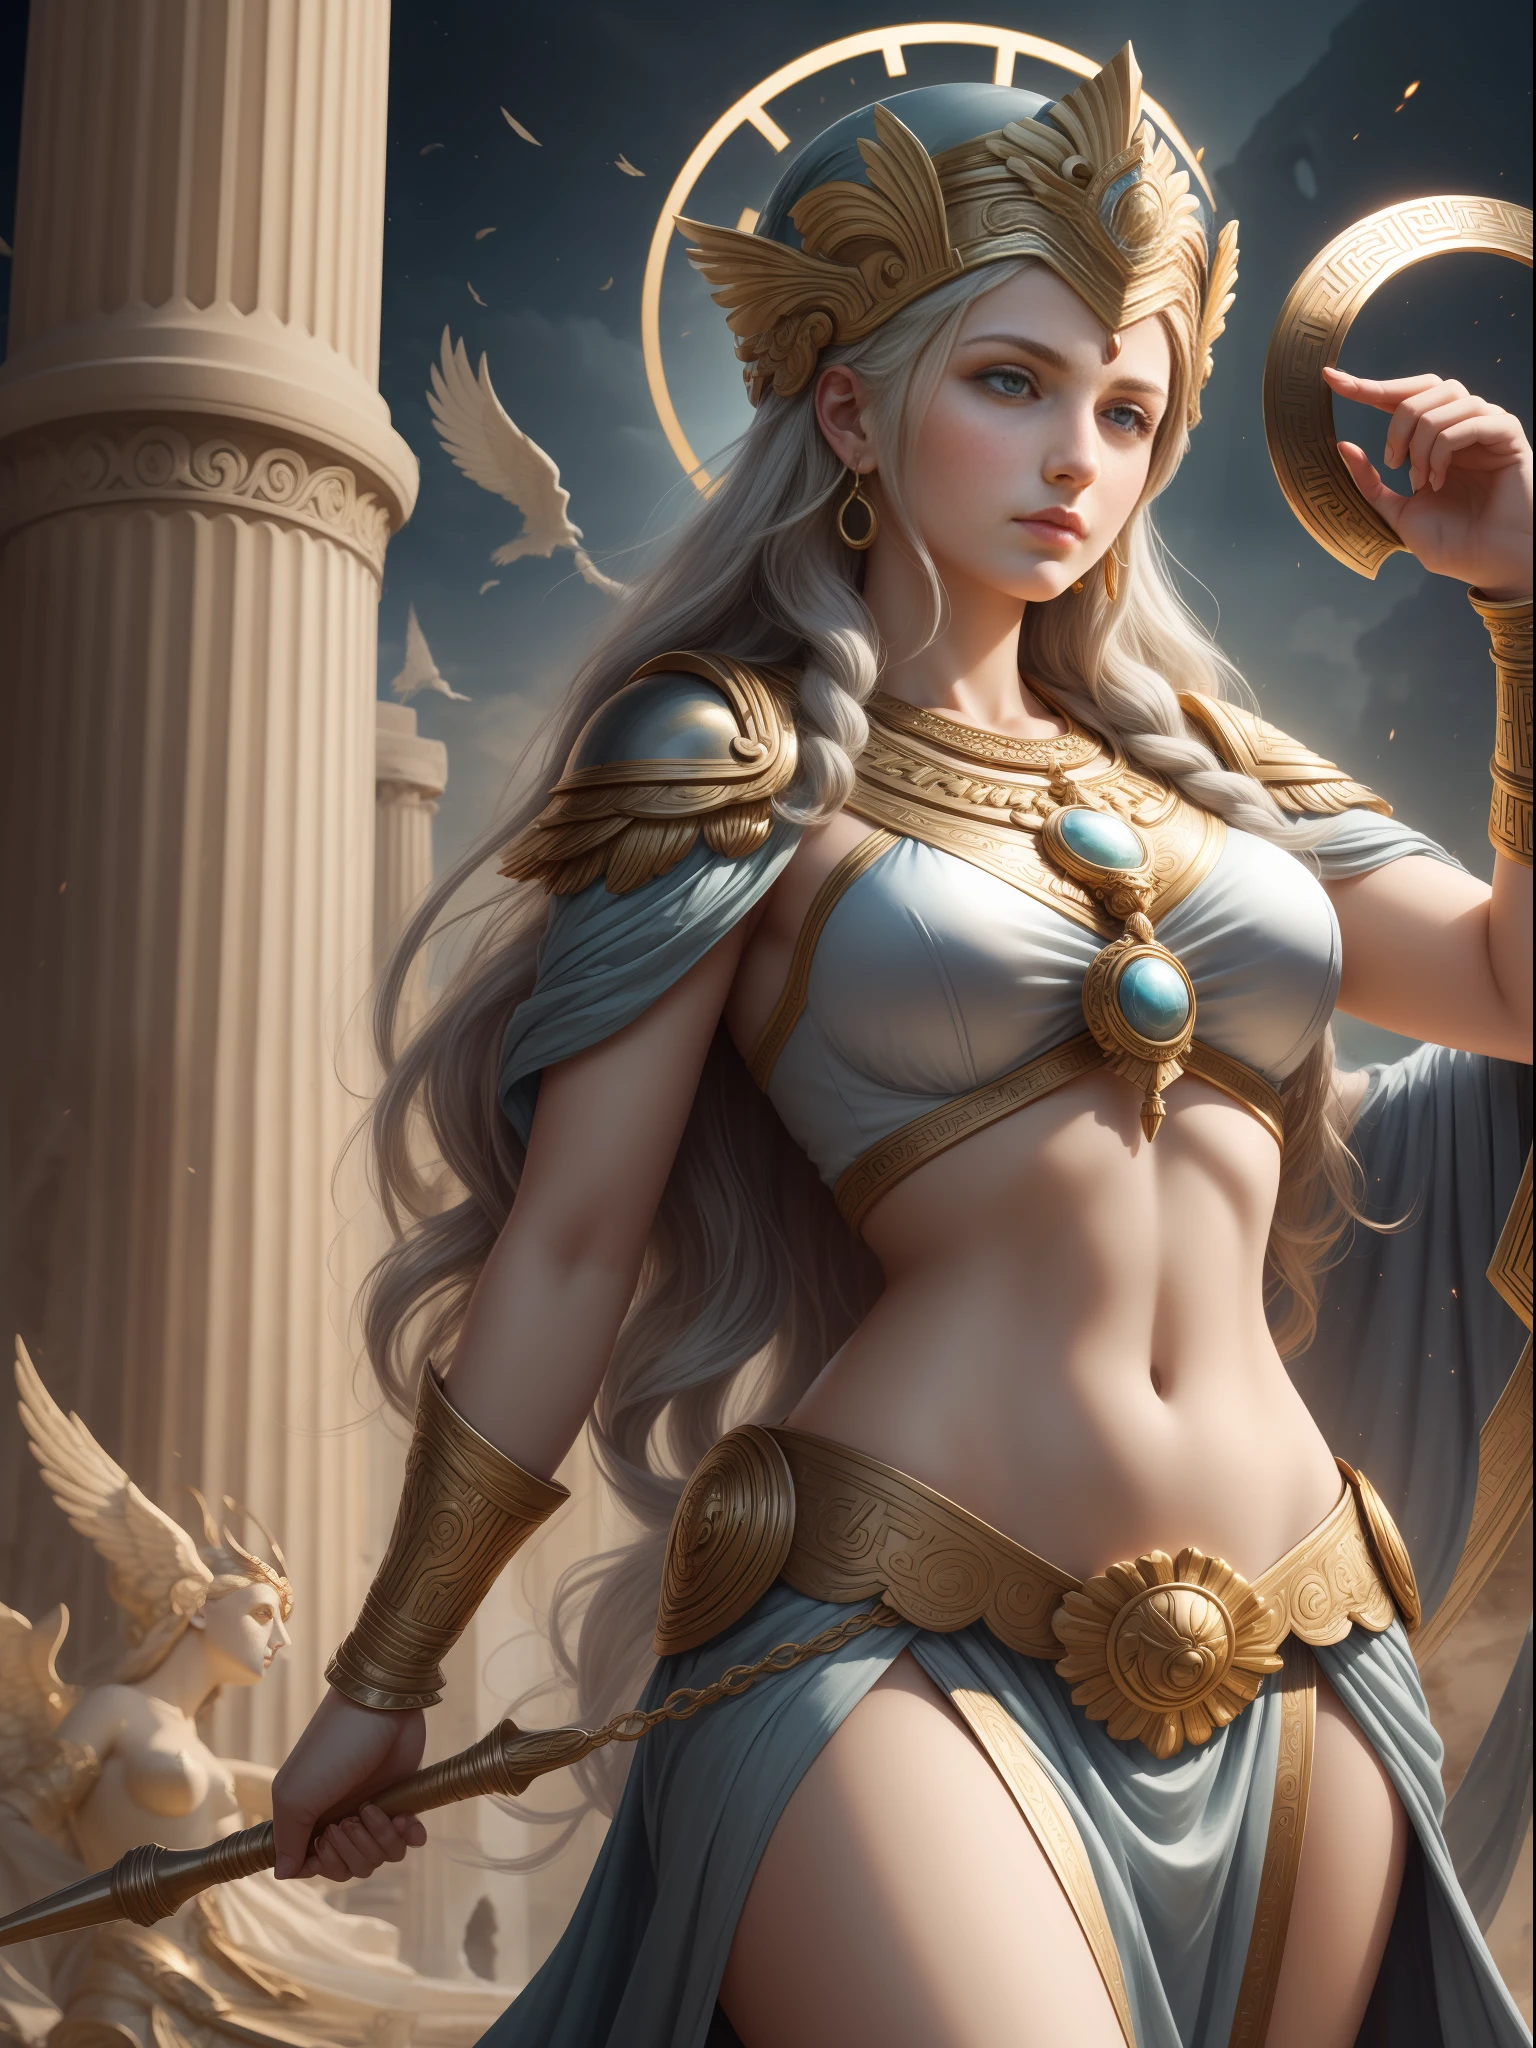 雅典娜女神, 希臘神話女神, 智慧女神, 藝術, 希臘神話中的智慧與戰爭, 珍惜人間正義的武士女神, 一位美麗而嚴肅的年輕女子.